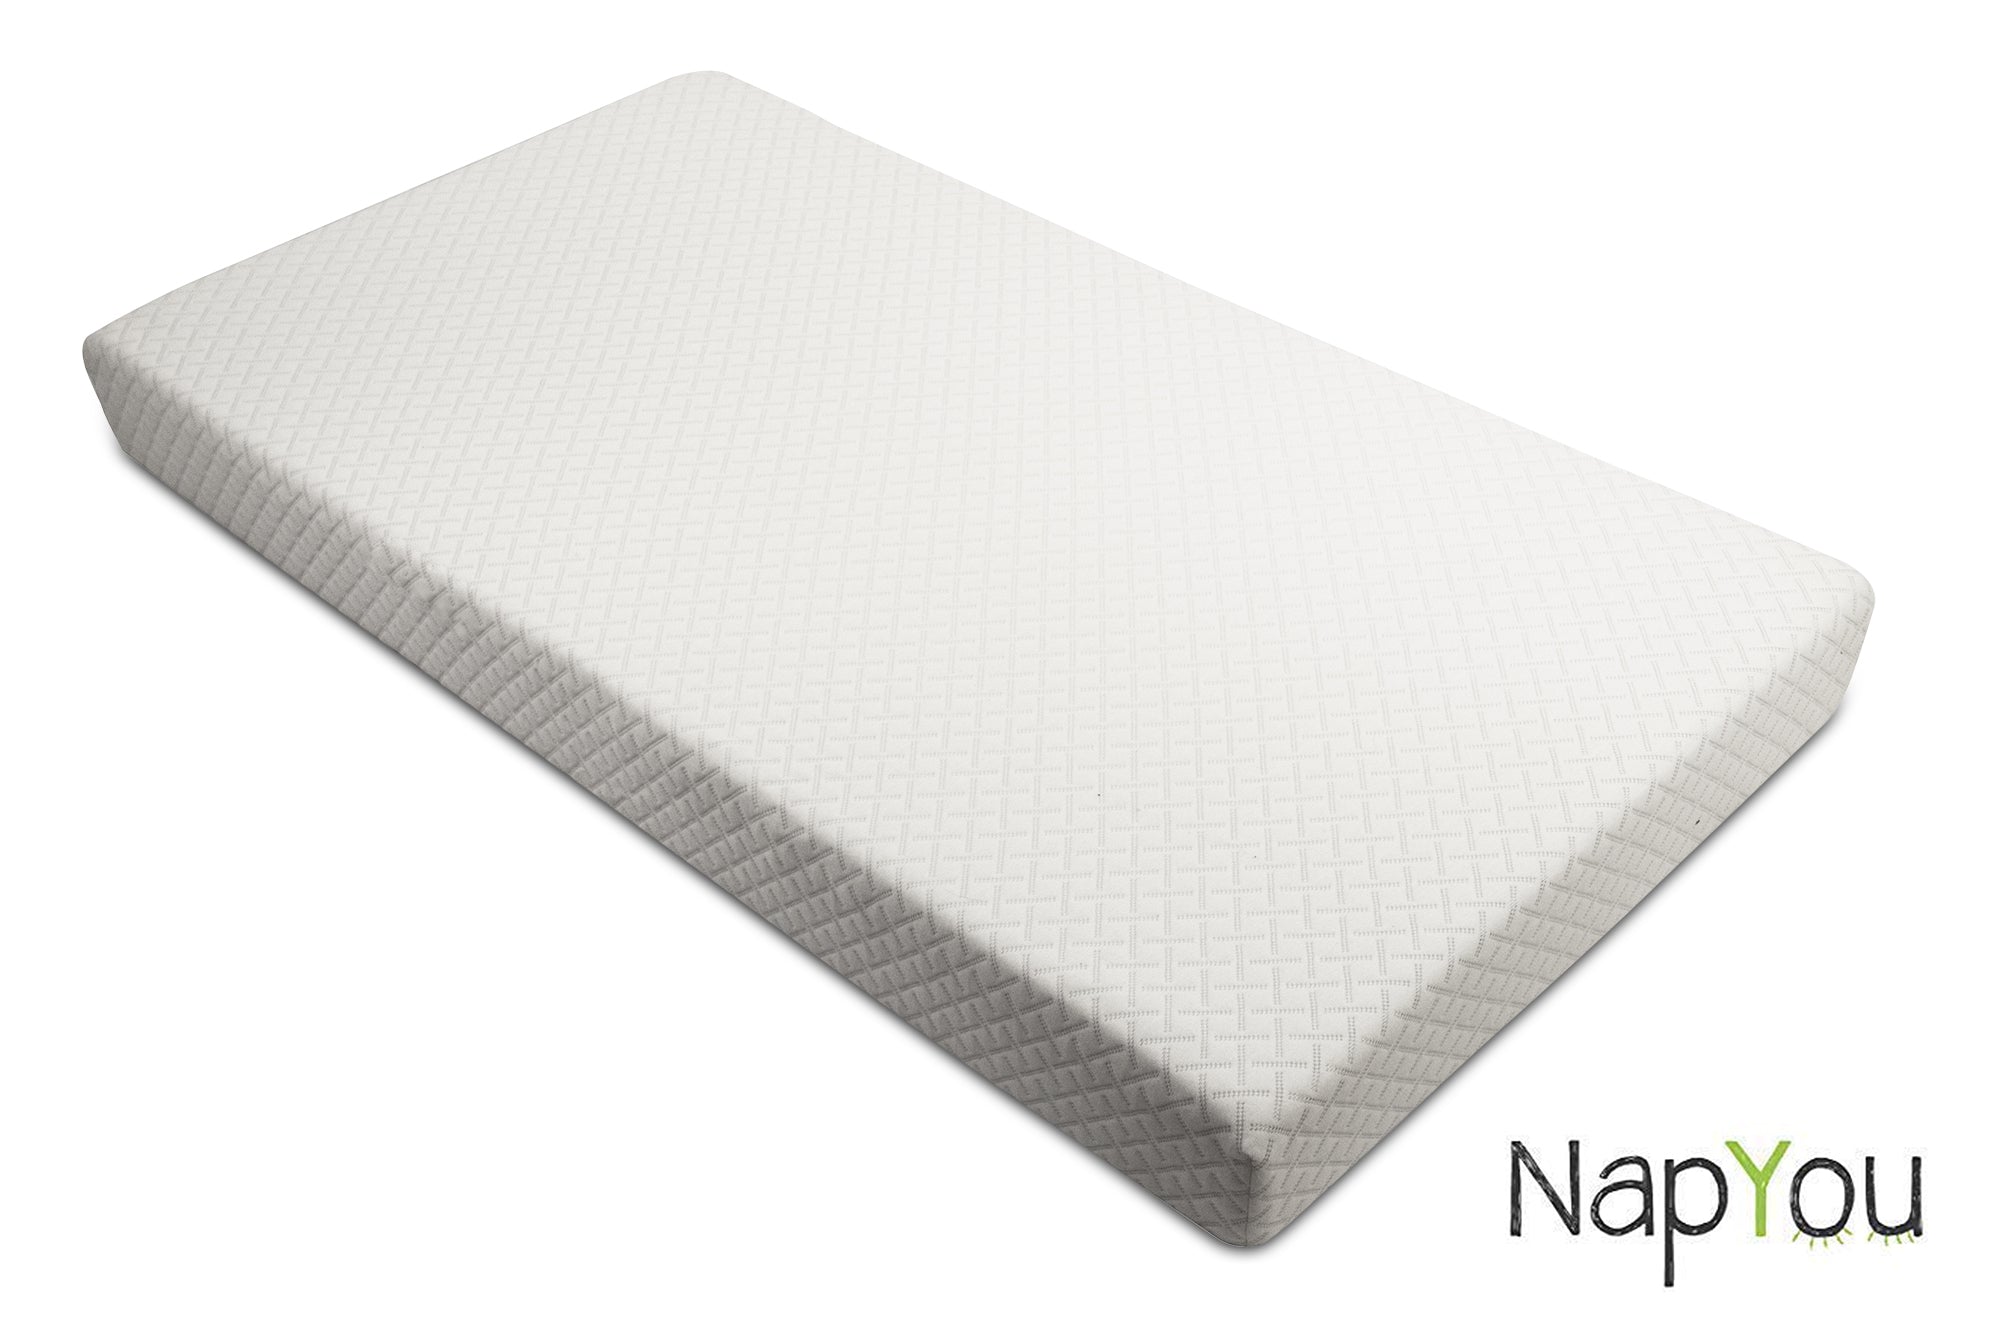 napyou crib mattress